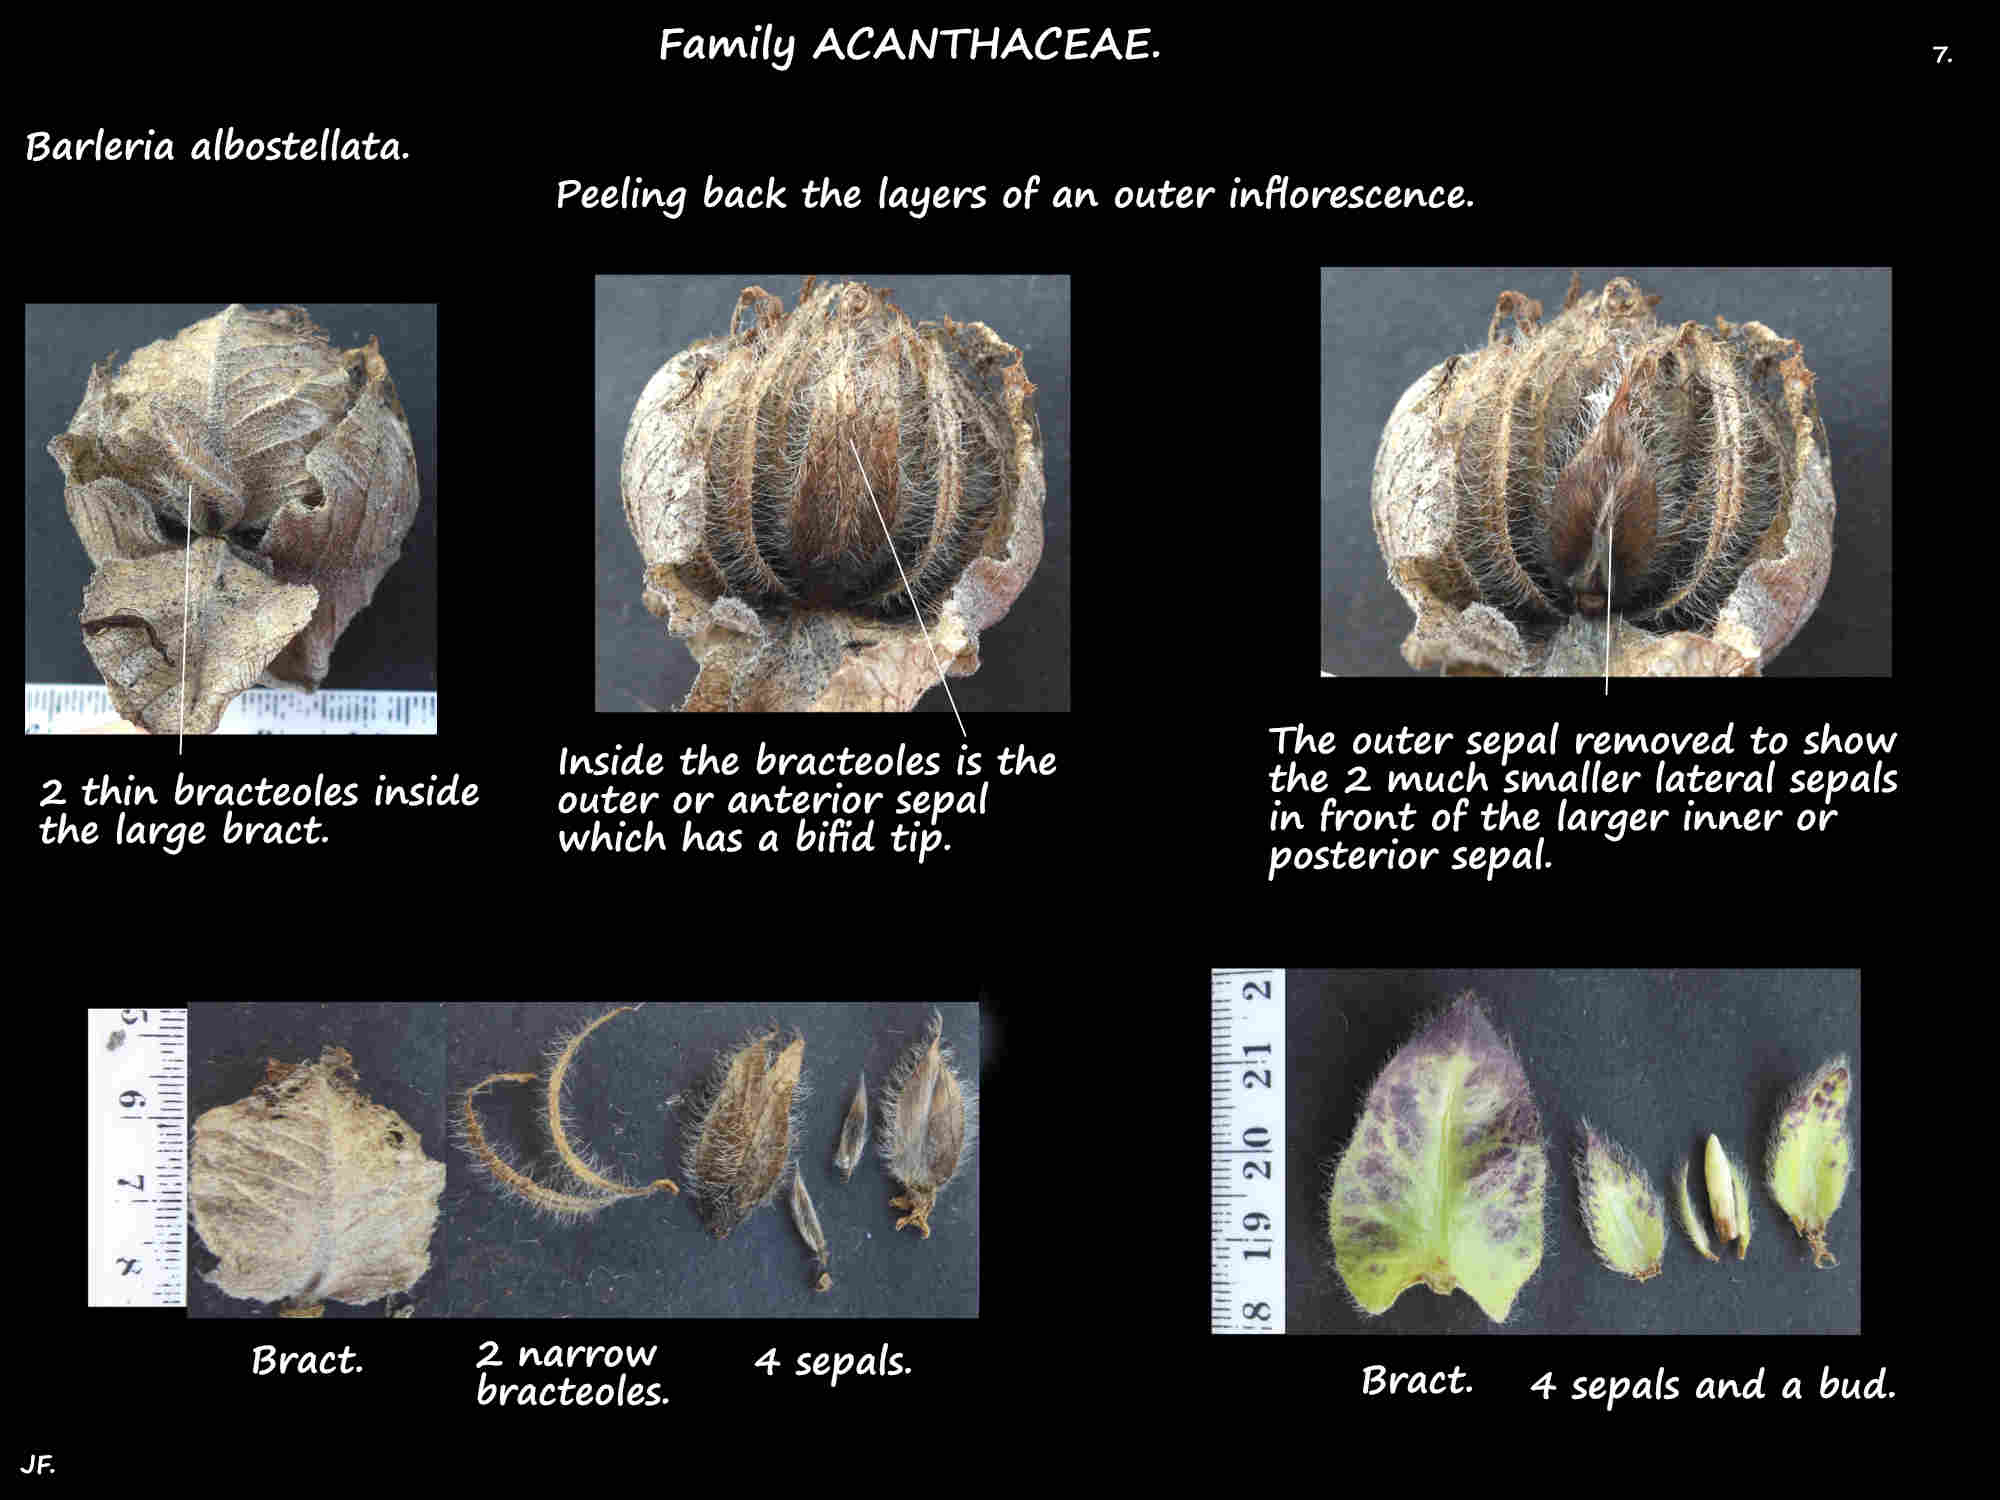 7 The parts of Barleria albostellata inflorescences